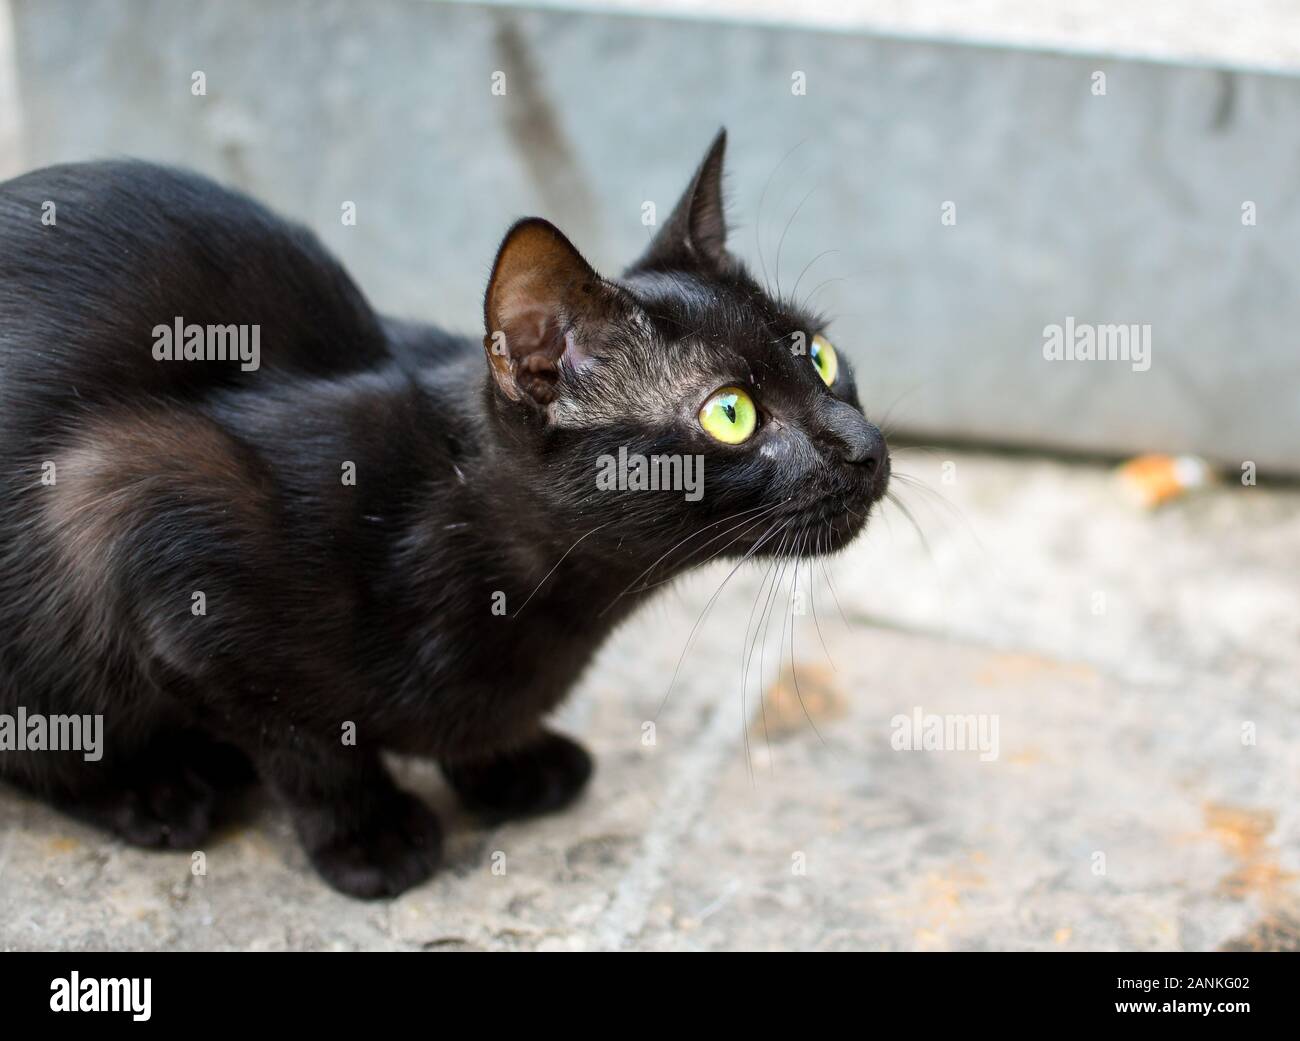 Ein streunender kurze behaarte schwarze Katze mit gelben, grünen Augen sitzt auf Pflaster in Kotor, Montenegro, der "Stadt der Katzen'. Stockfoto